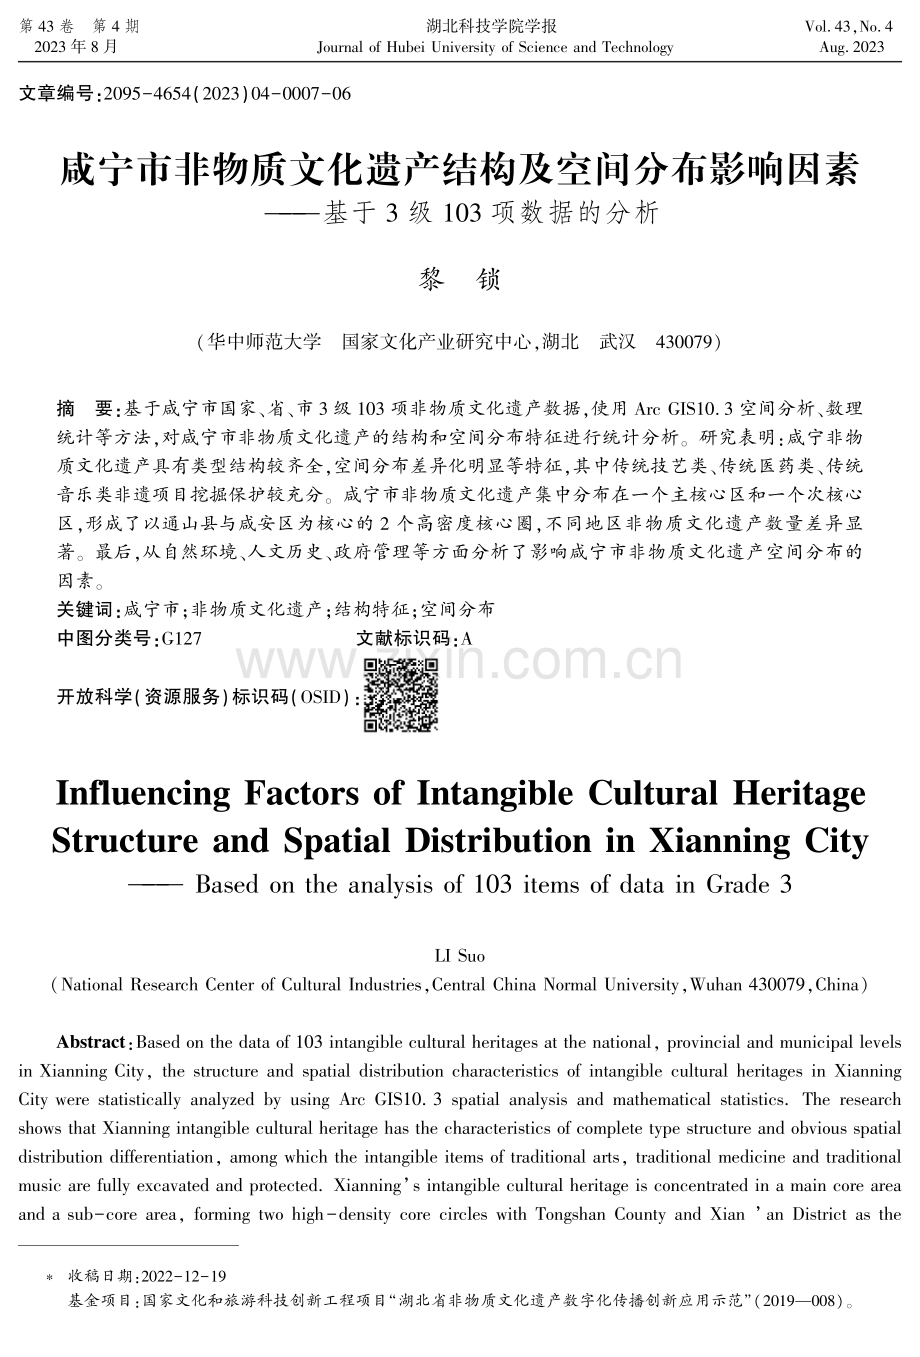 咸宁市非物质文化遗产结构及空间分布影响因素——基于3级103项数据的分析.pdf_第1页